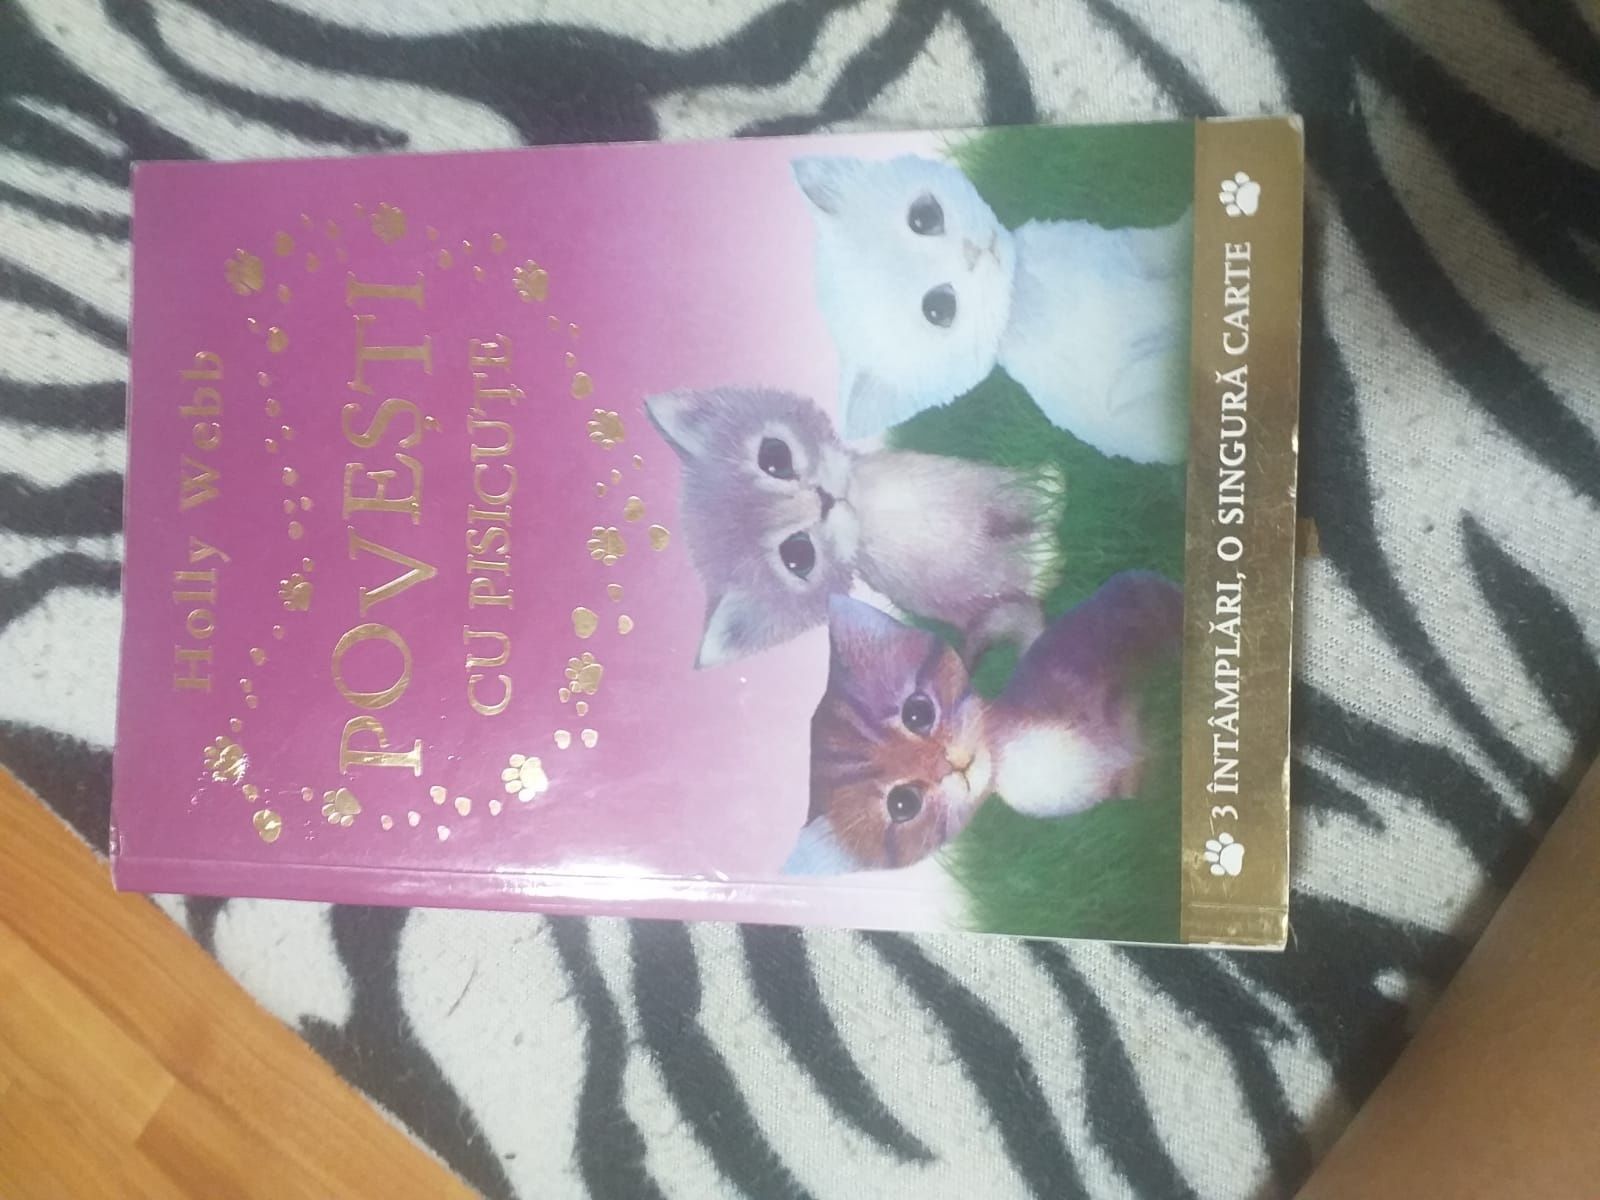 Cartea"povestea cu pisici"